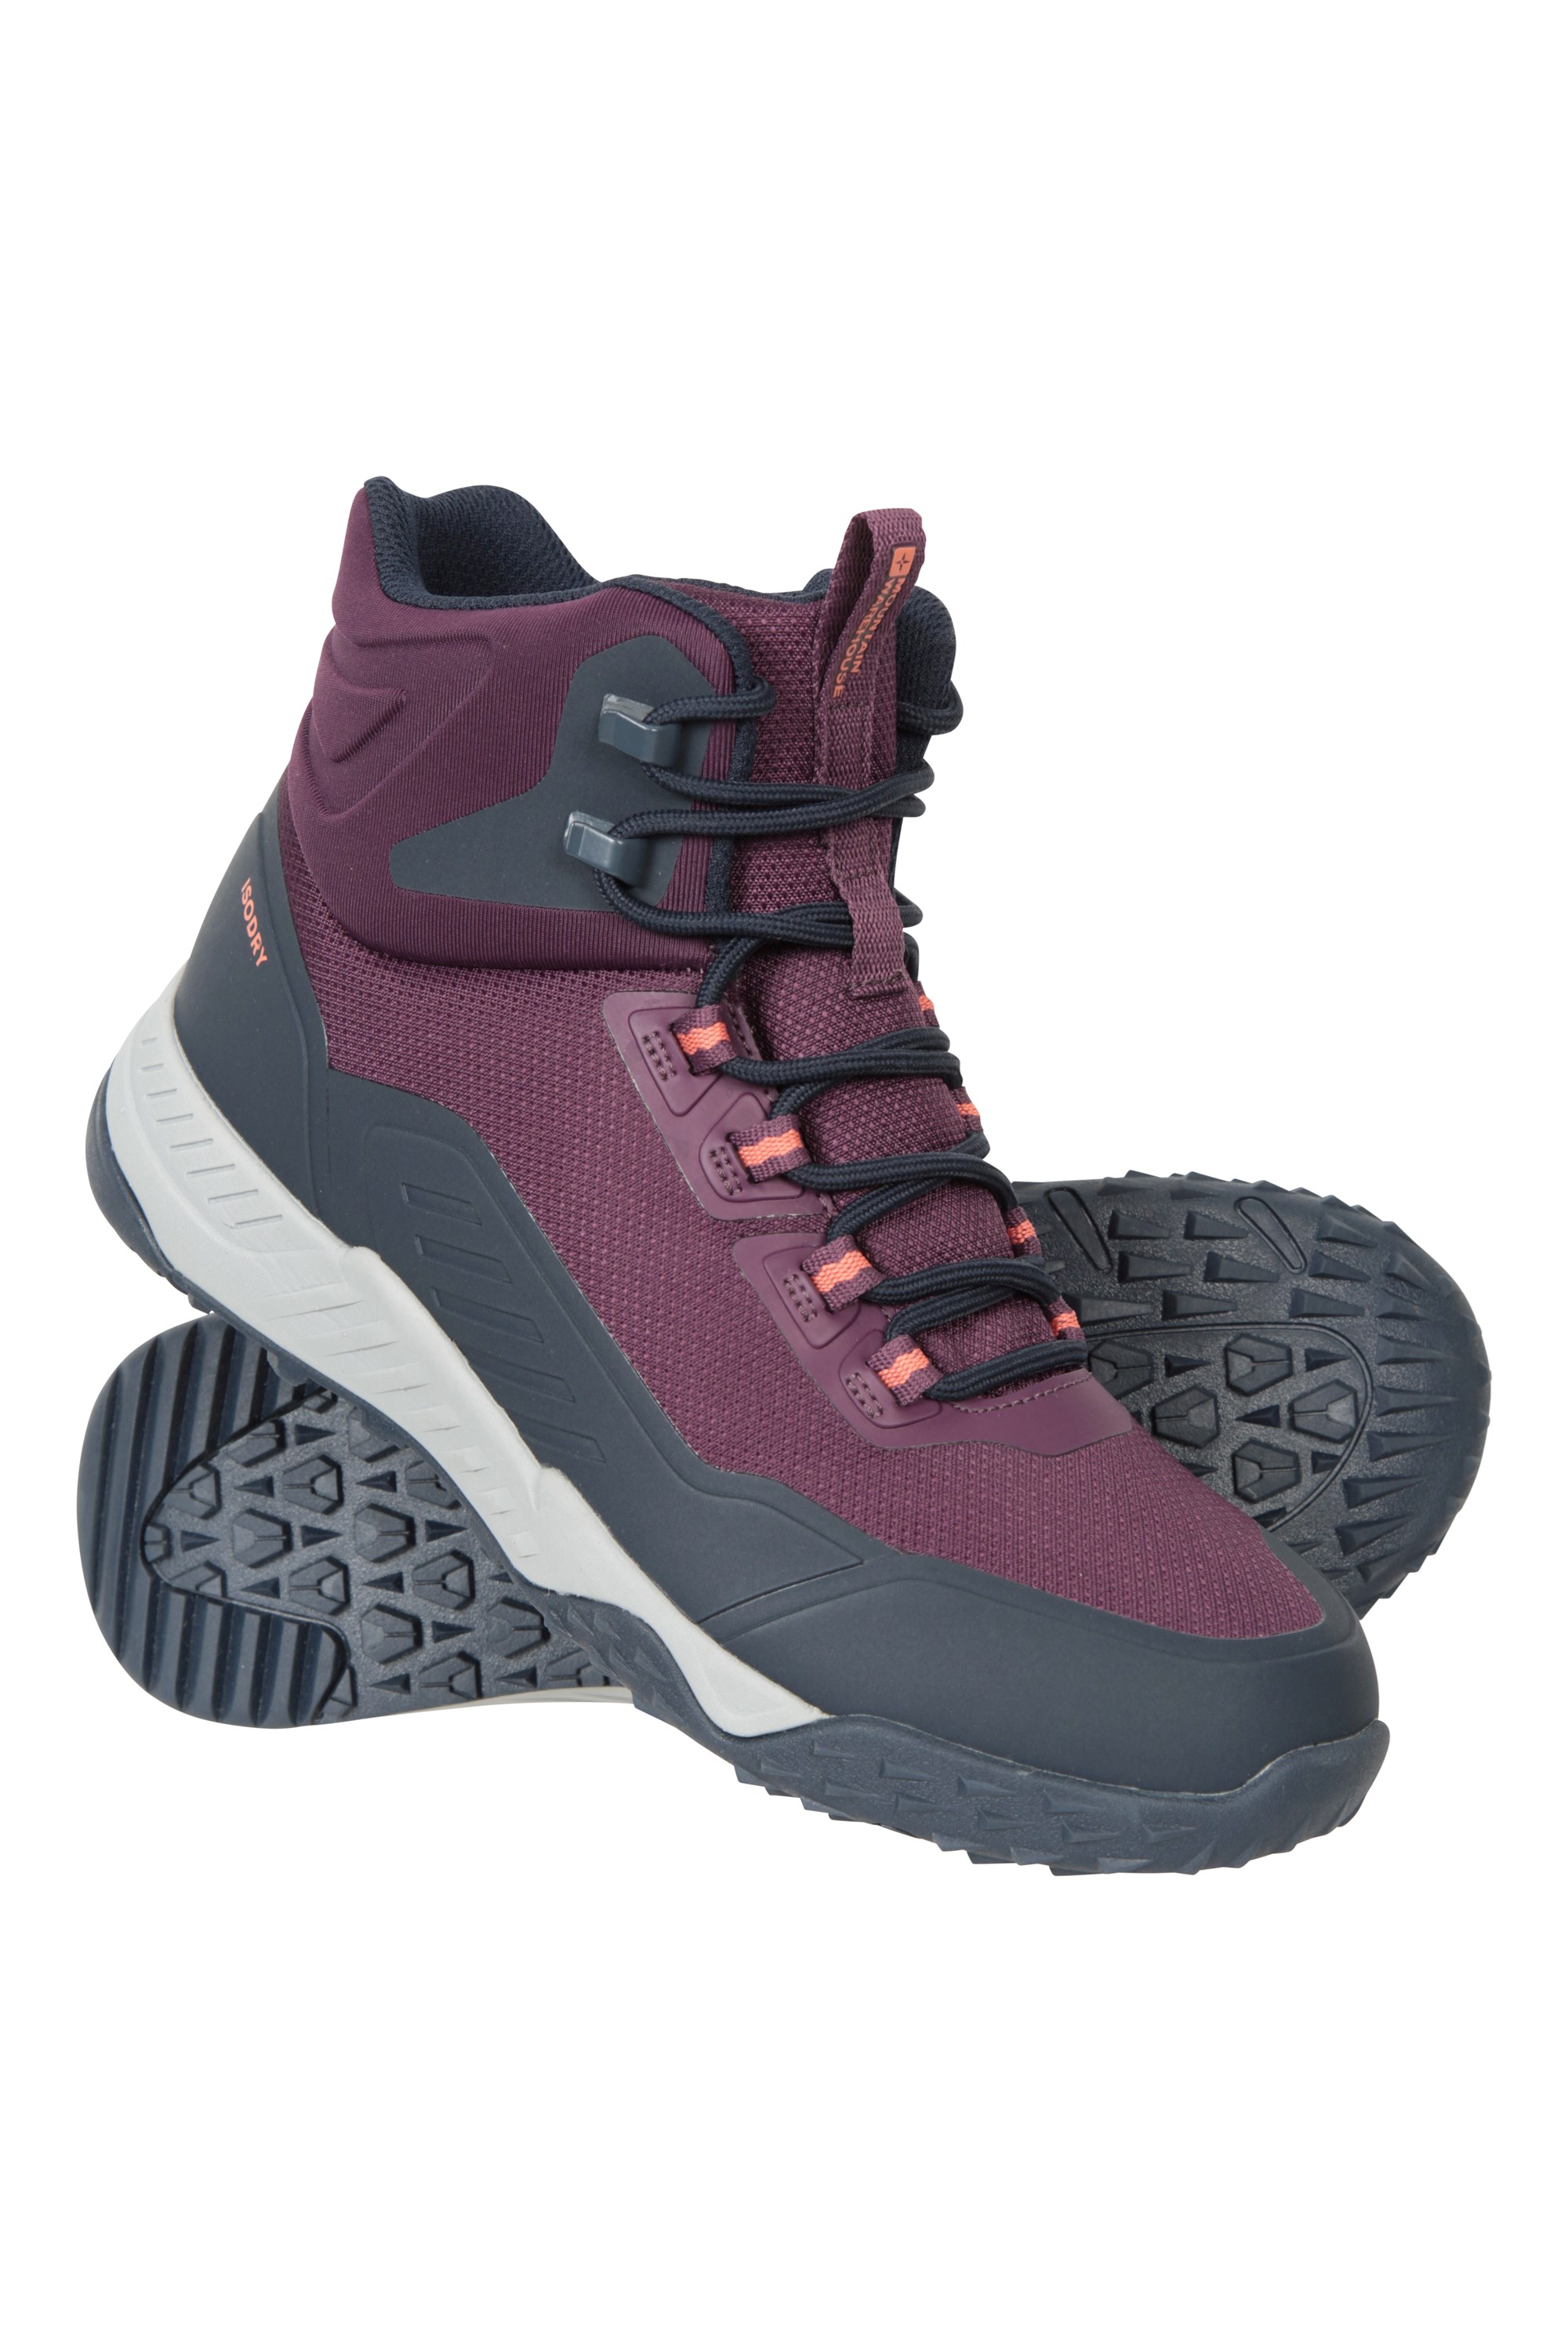 Magnify Womens Waterproof Walking Boots - Purple